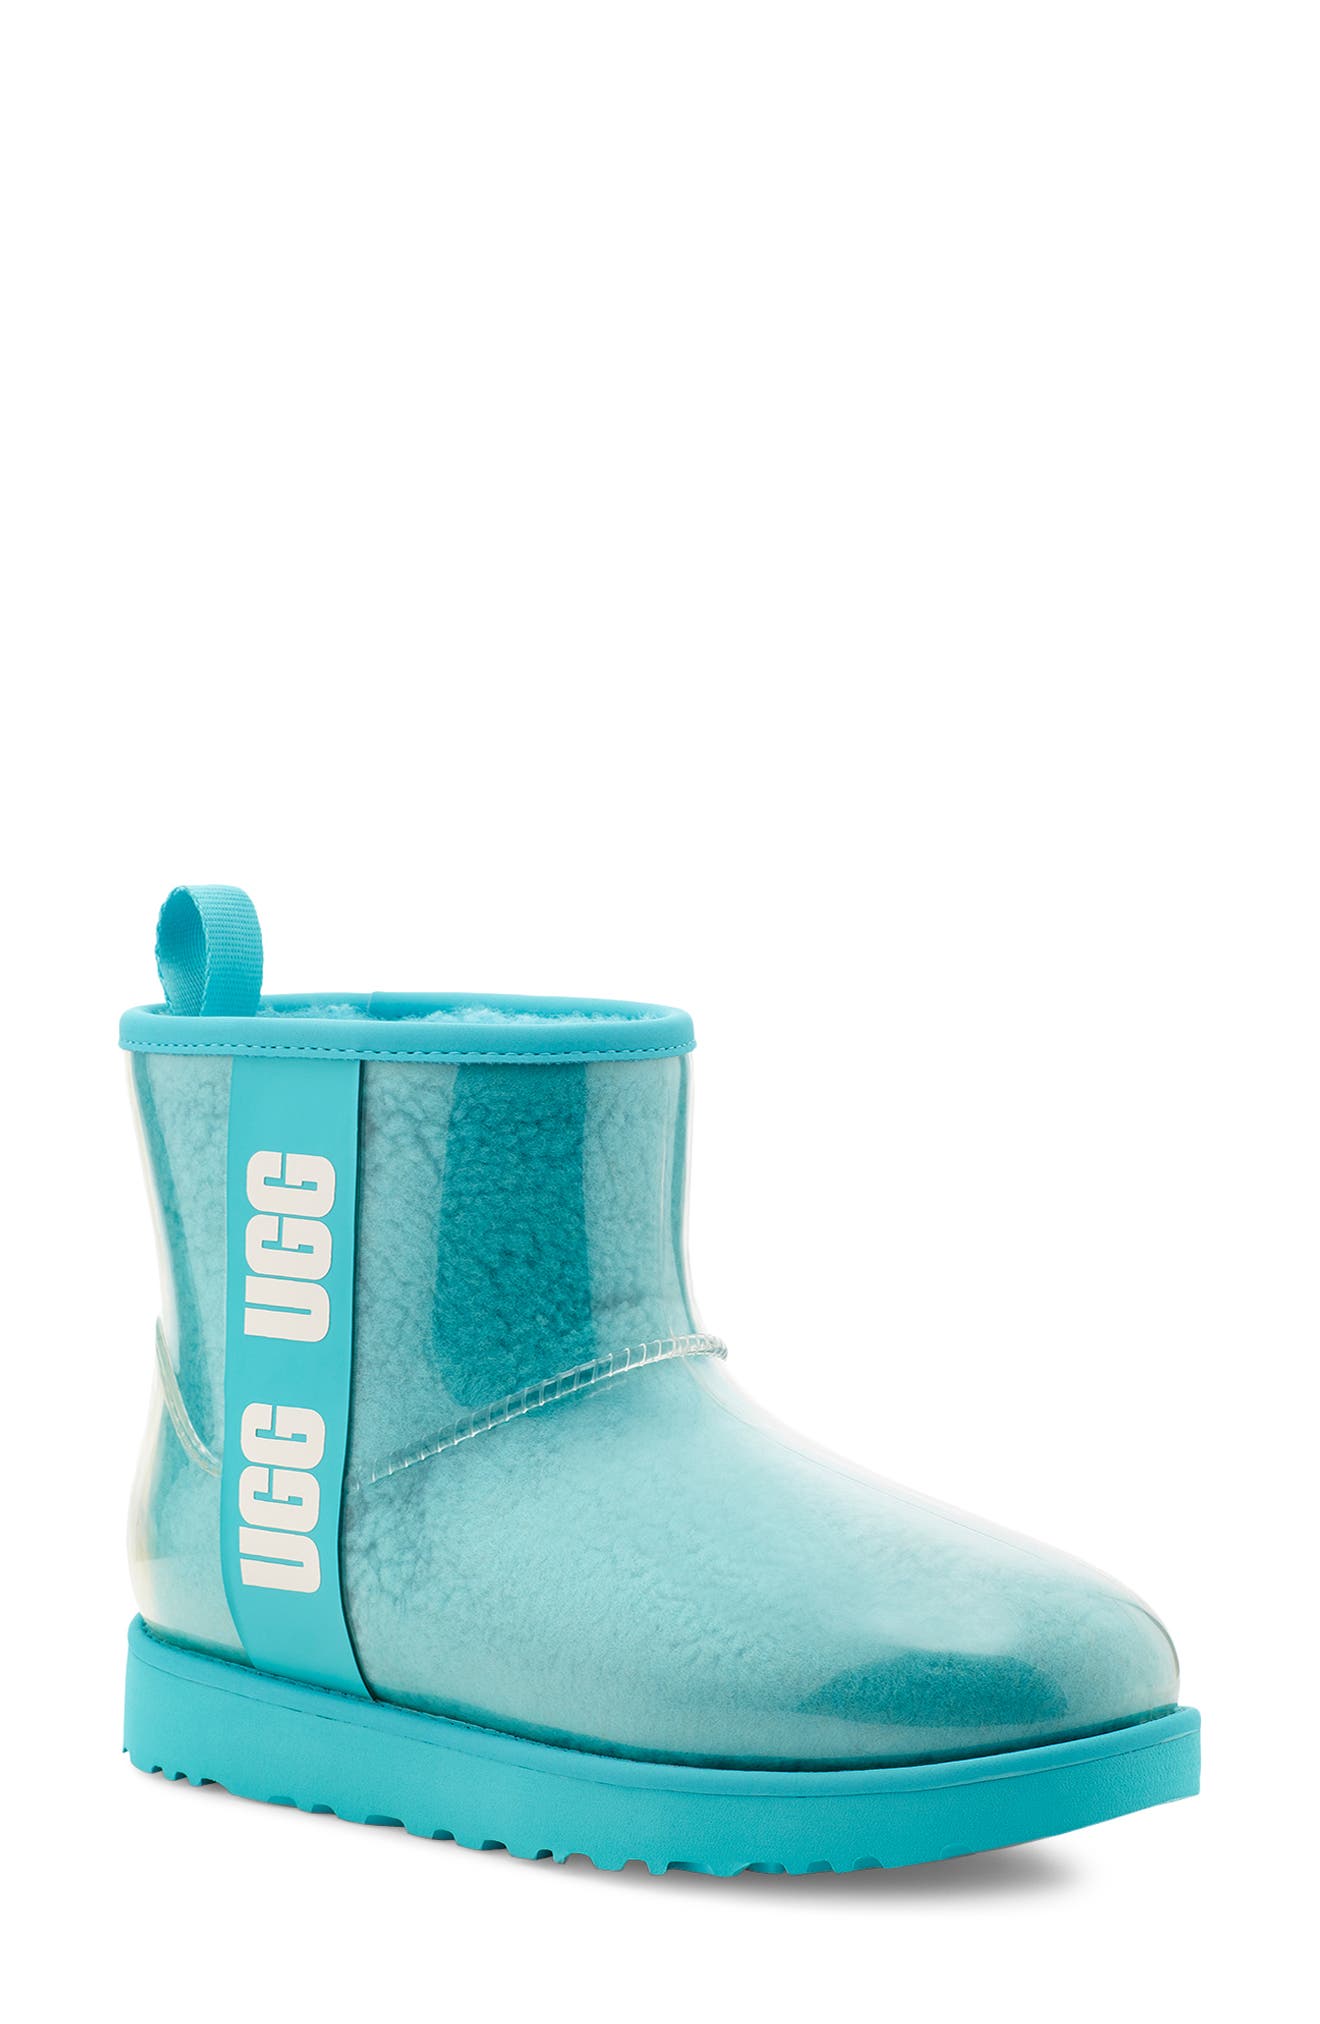 ugg light blue boots